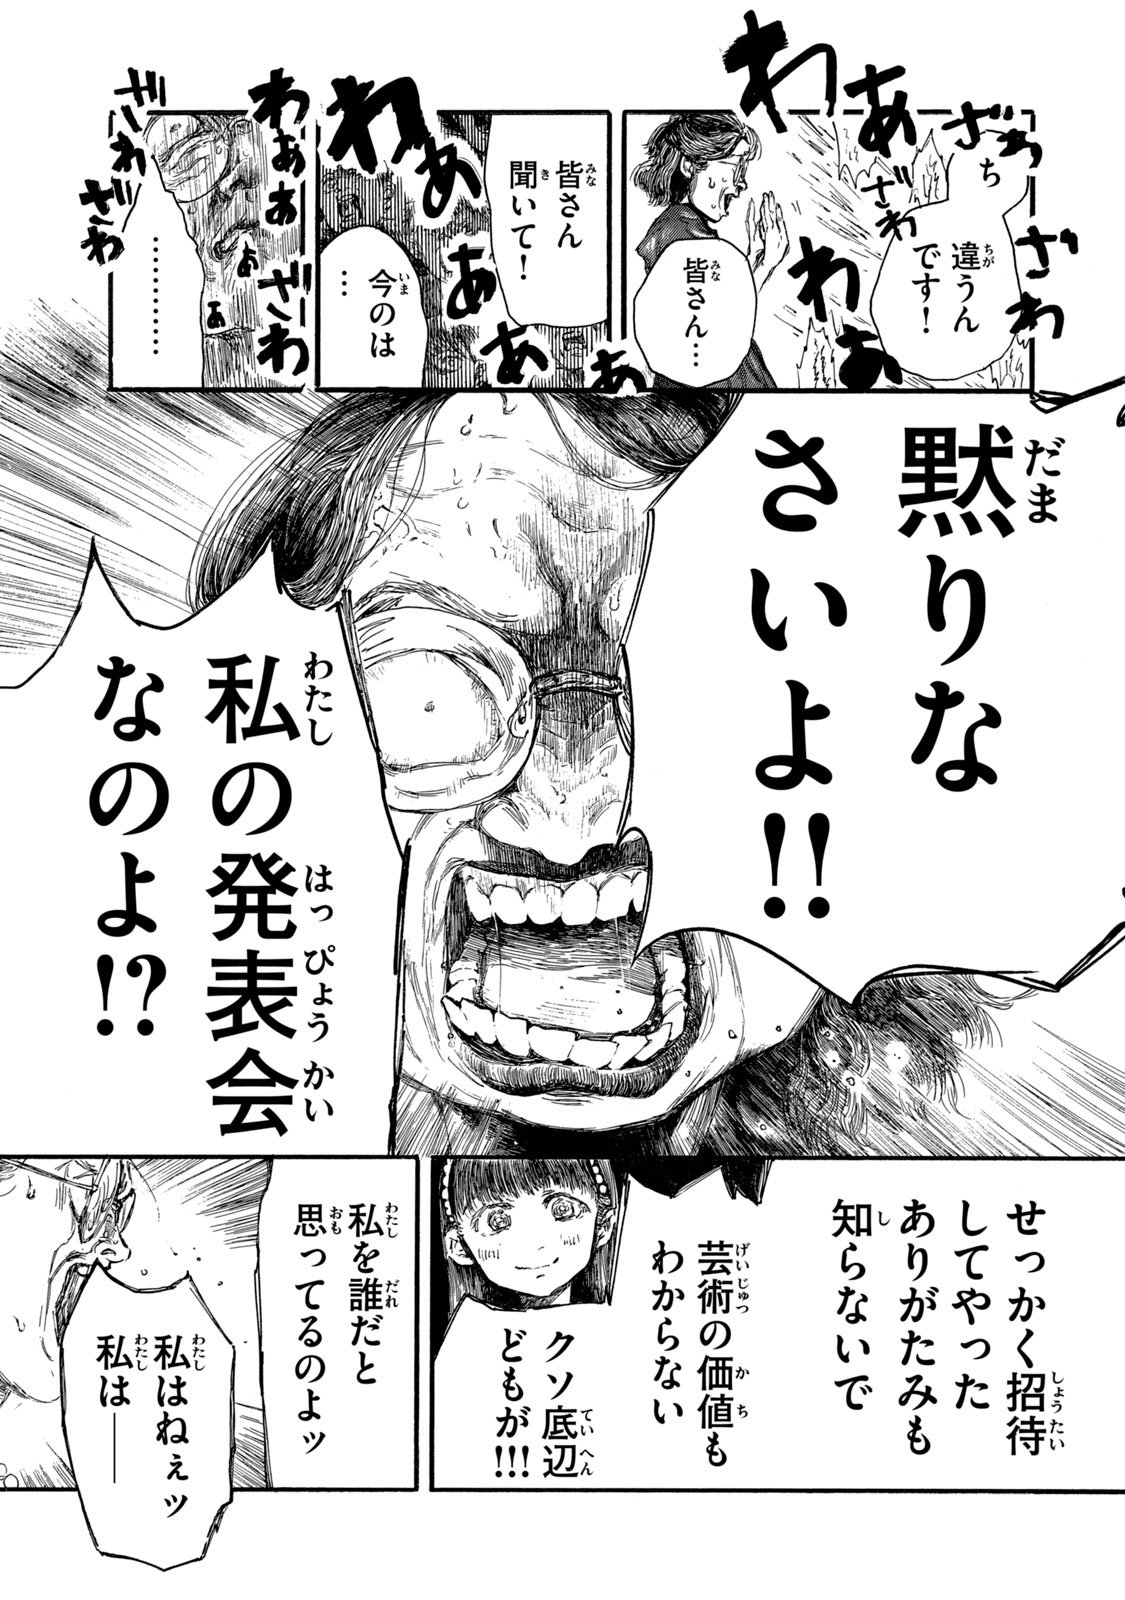 Watashi no Hara no Naka no Bakemono - Chapter 13 - Page 4